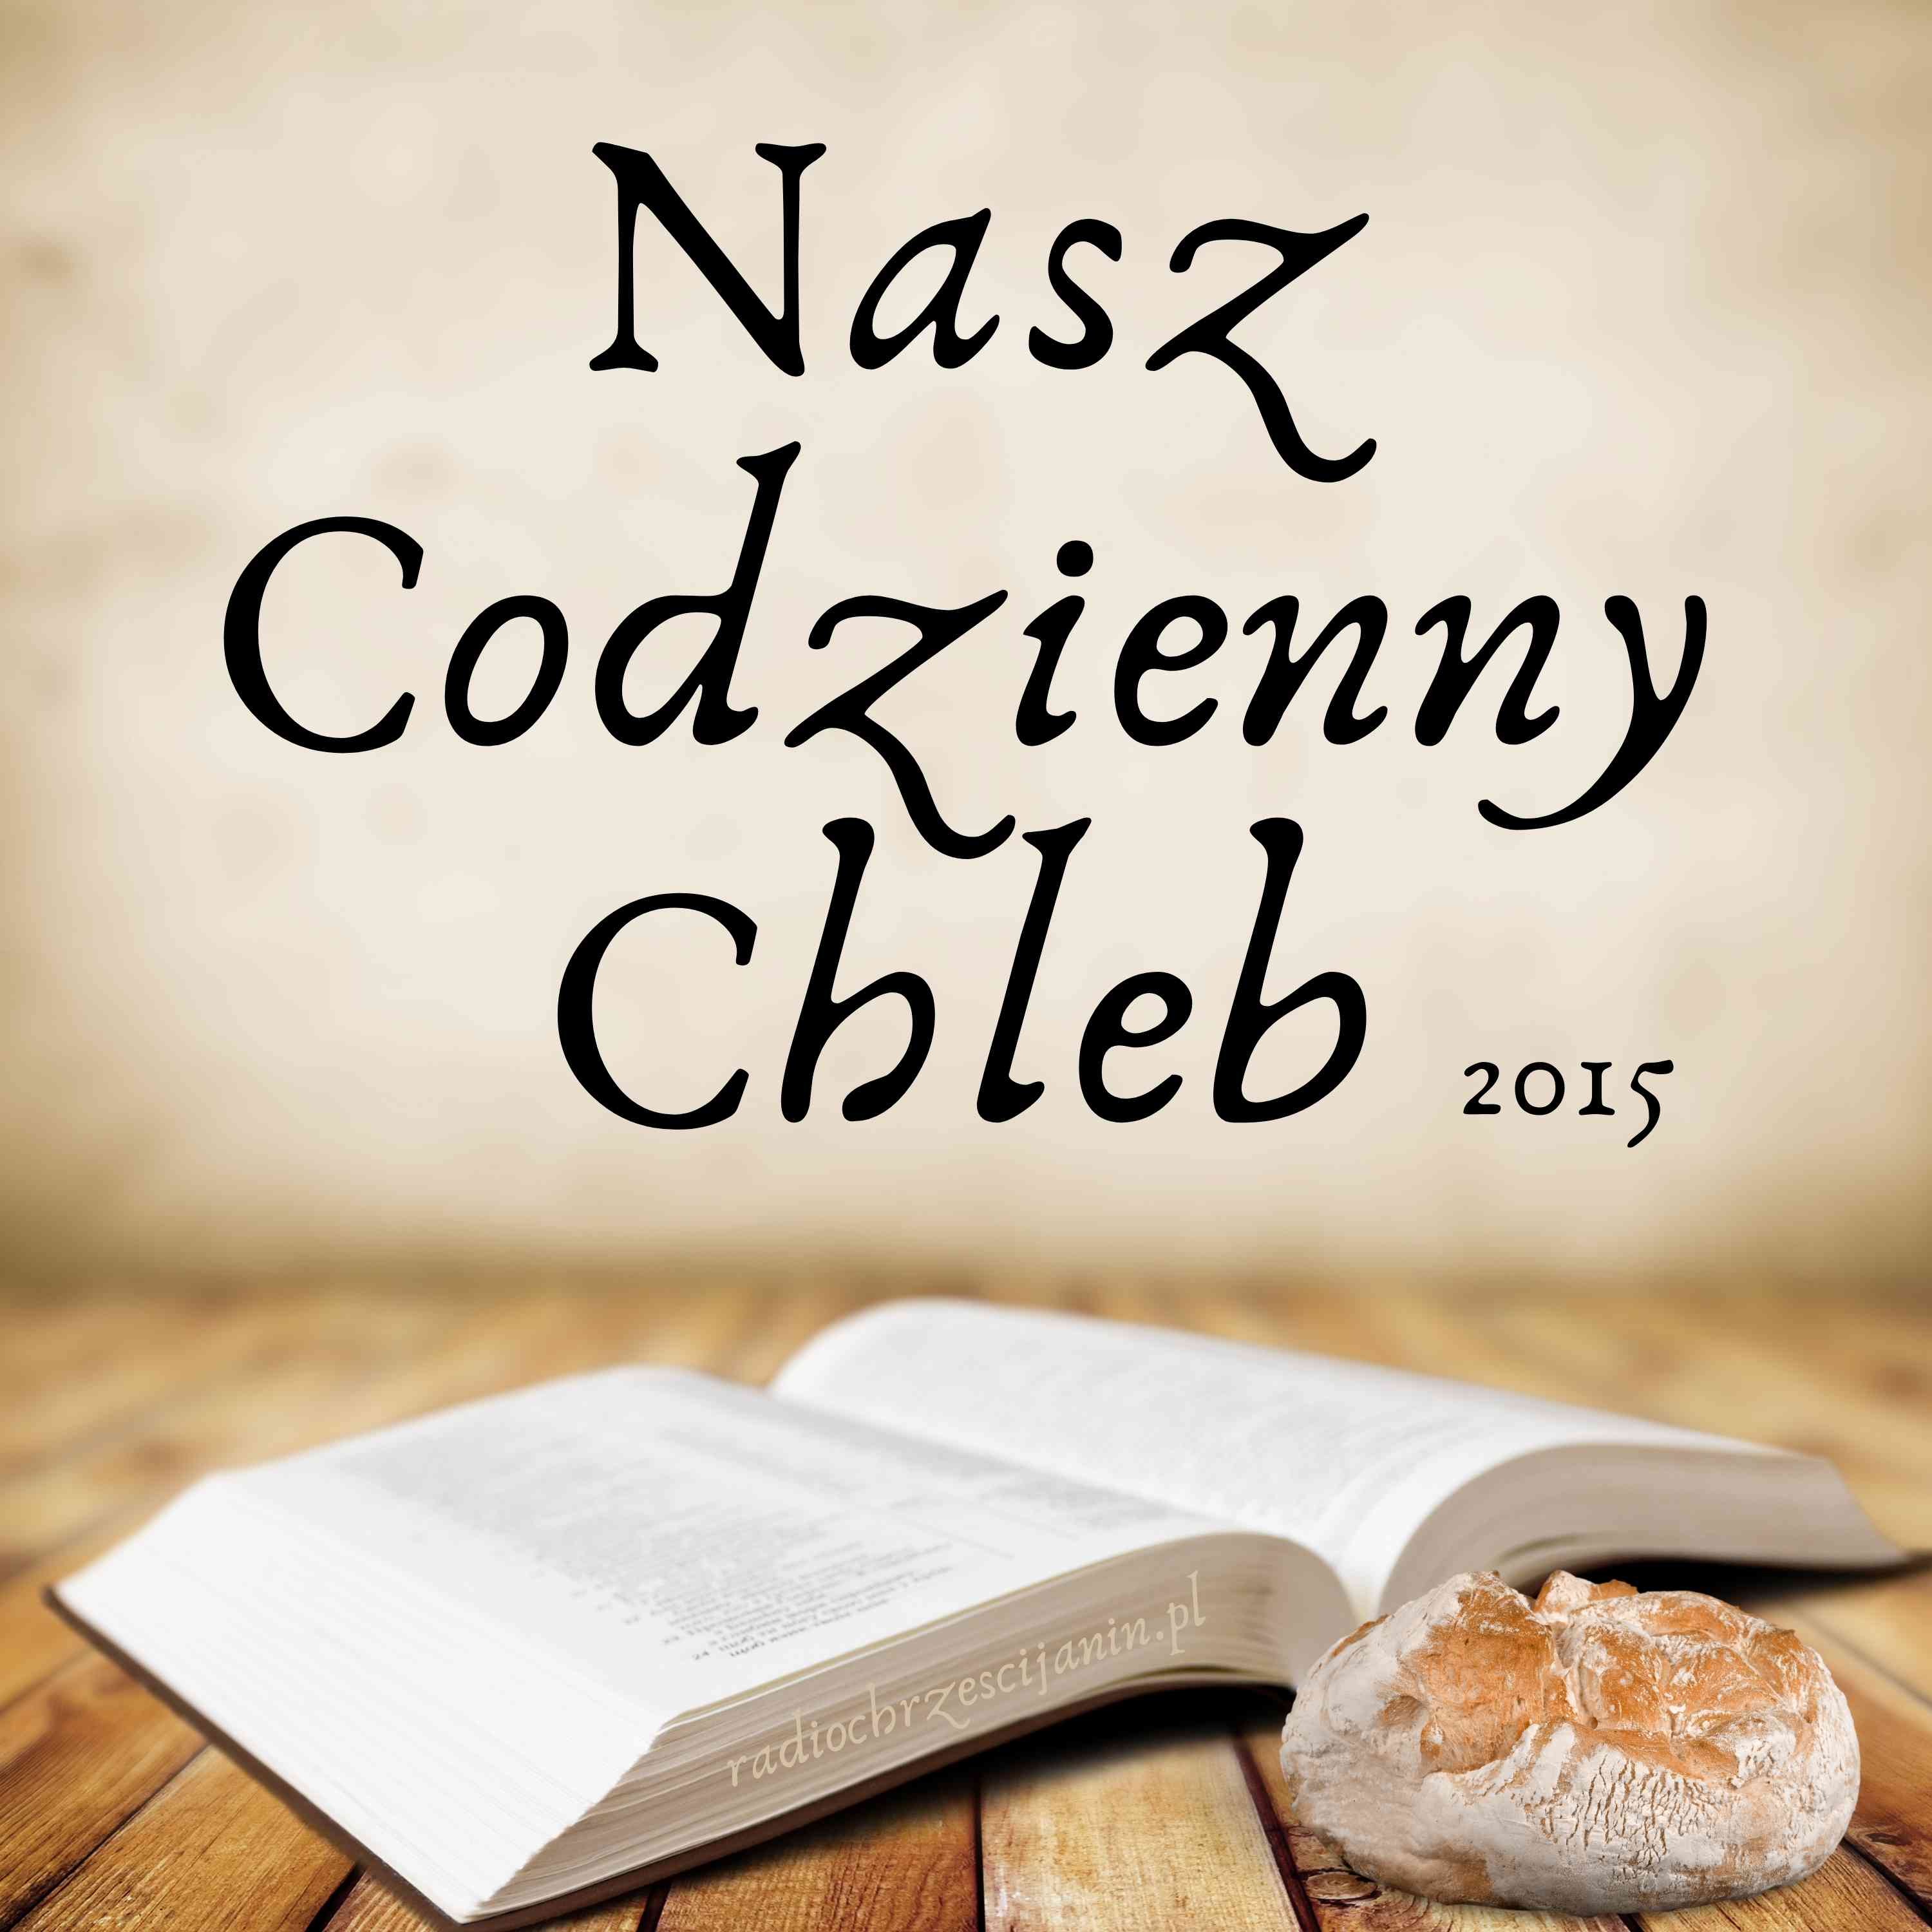 Artwork for Nasz Codzienny Chleb 2015